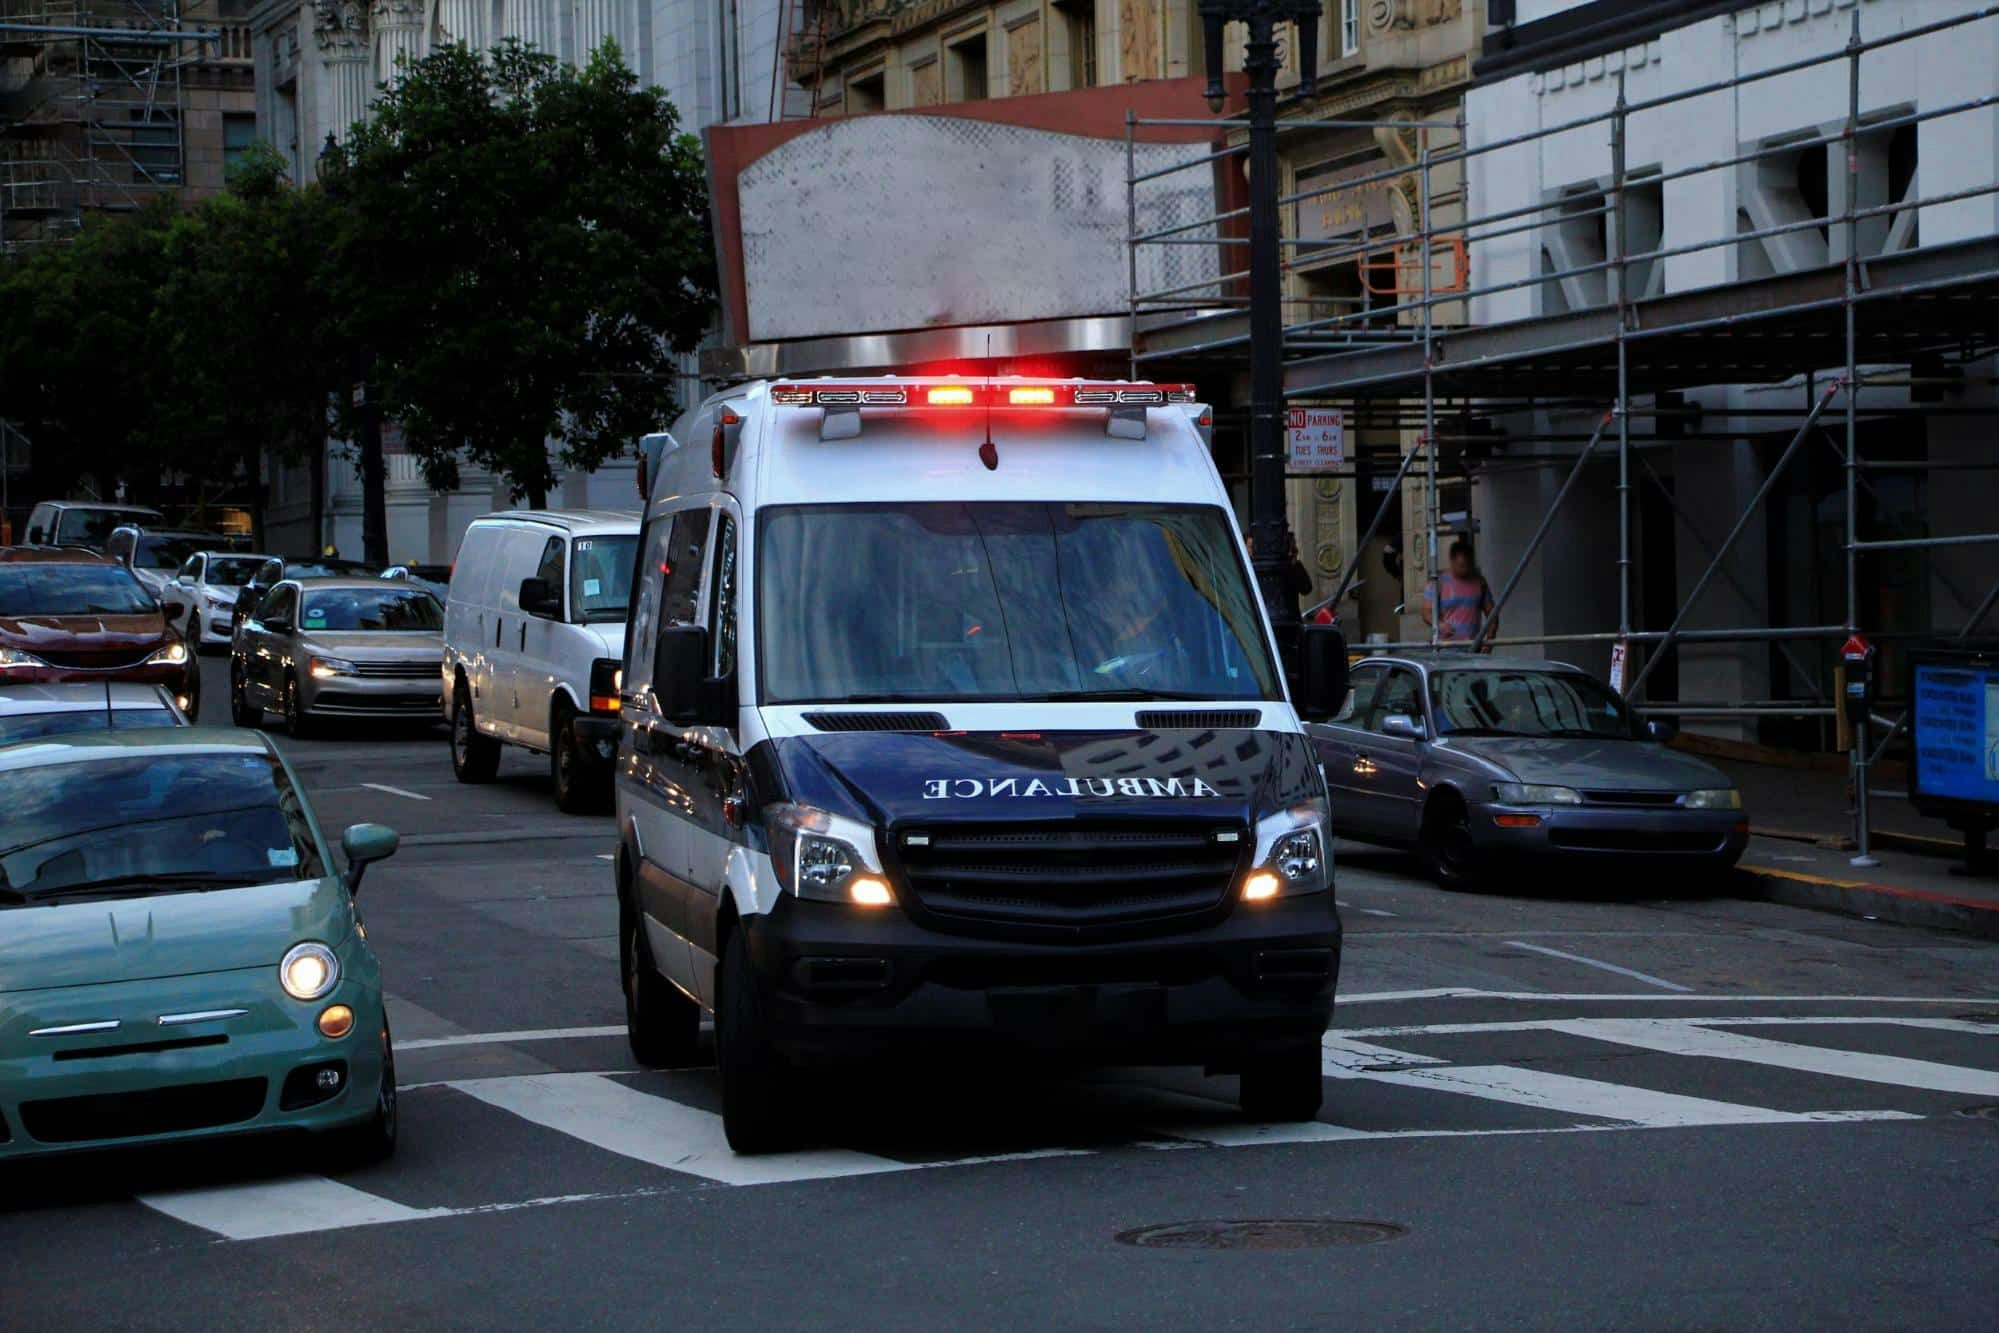 ambulance with flashing lights